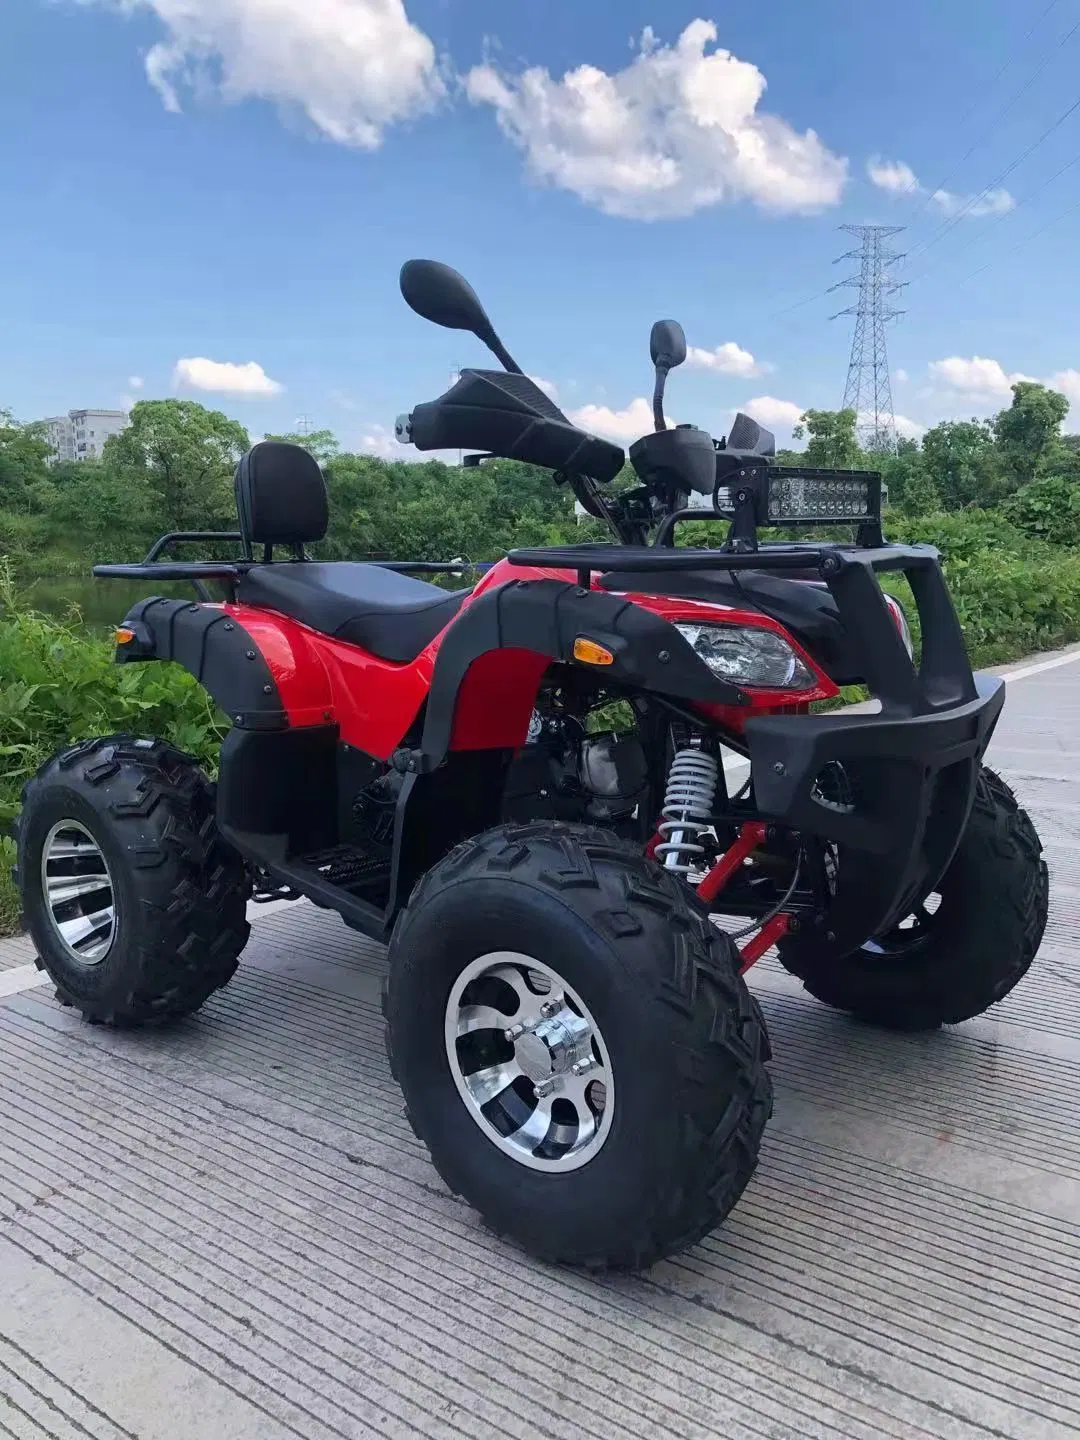 Fábrica china de ATVs y UTVs Cuatrimotos de 4 ruedas Motocicleta Quad Bike 200cc con Barra de Equilibrio ATV con CE.